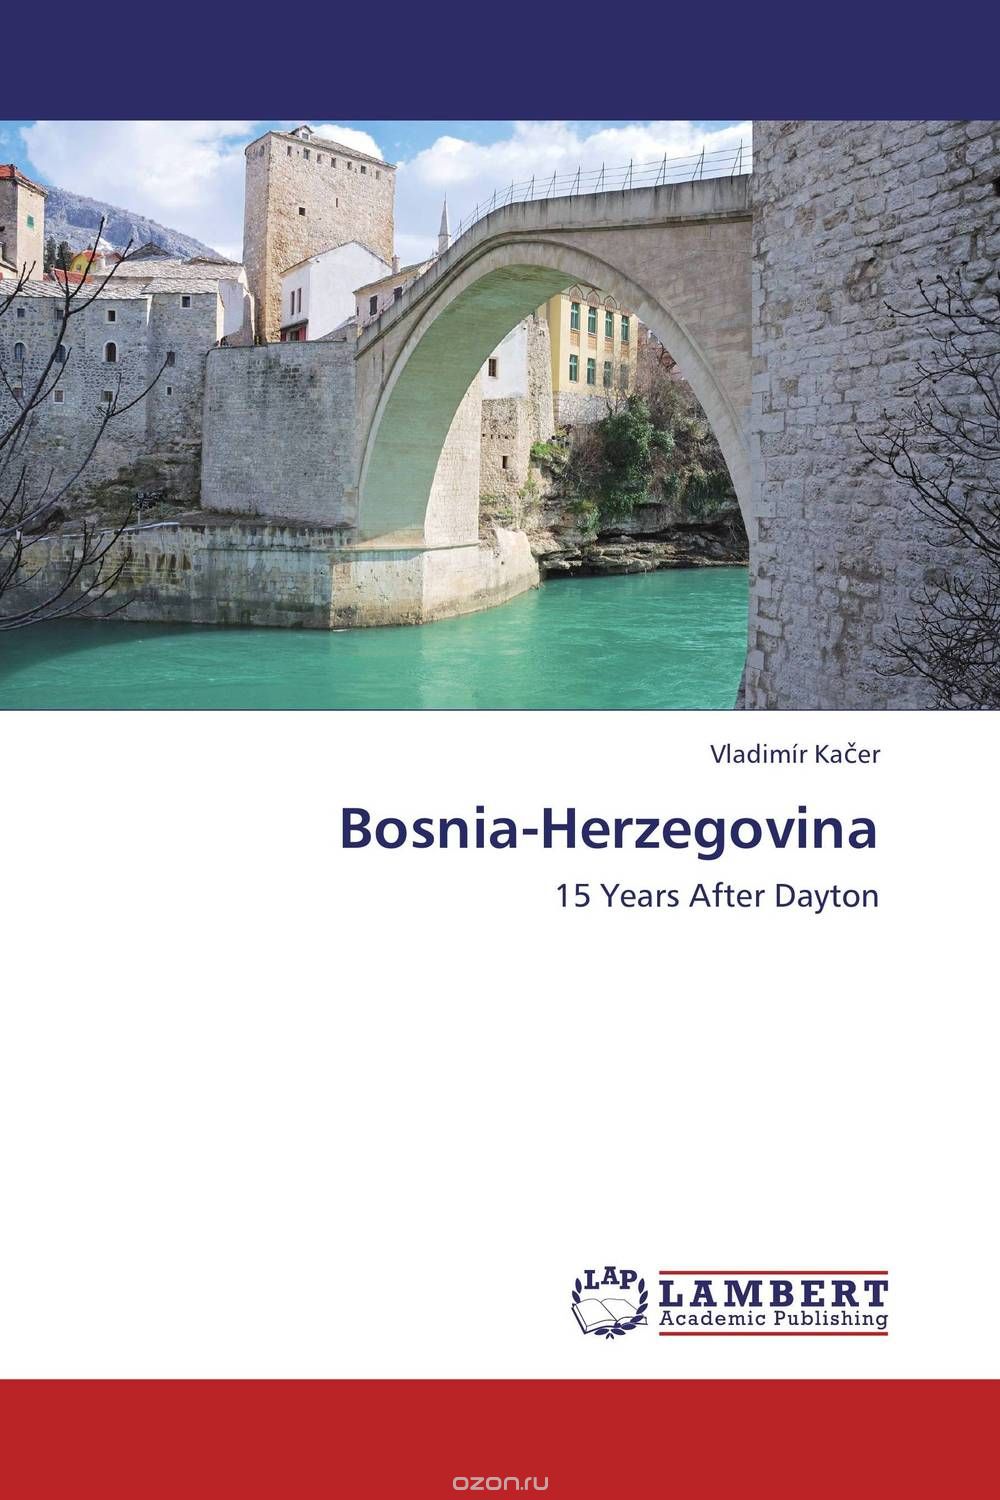 Скачать книгу "Bosnia-Herzegovina"